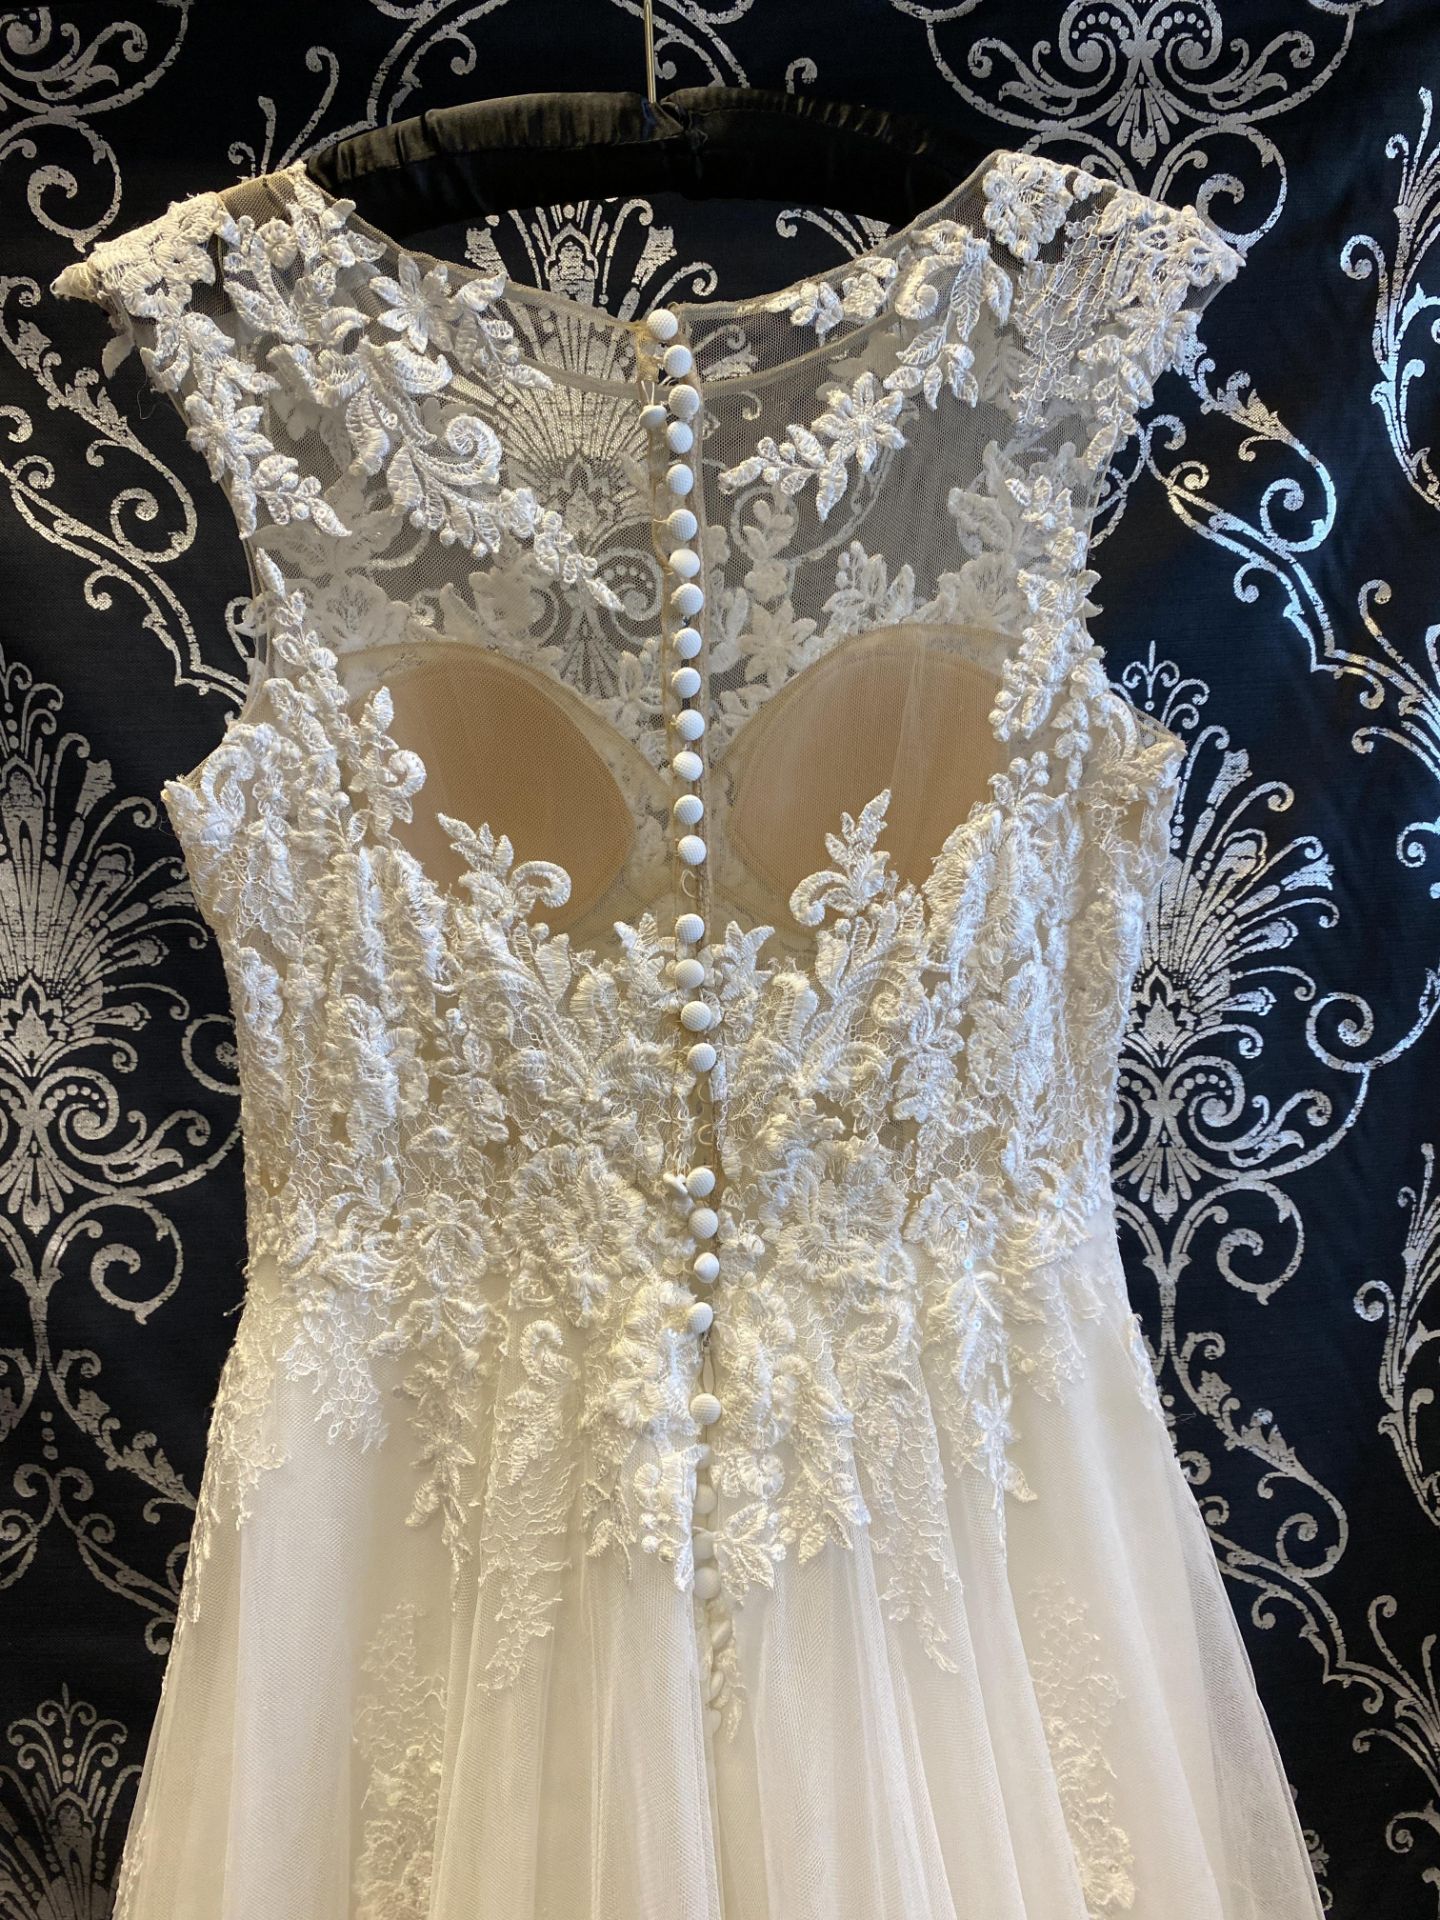 1 x PRONOVIAS Stunning Lace And Chiffon Full Skirted Designer Wedding Dress RRP £1,800 UK12 - Image 6 of 7